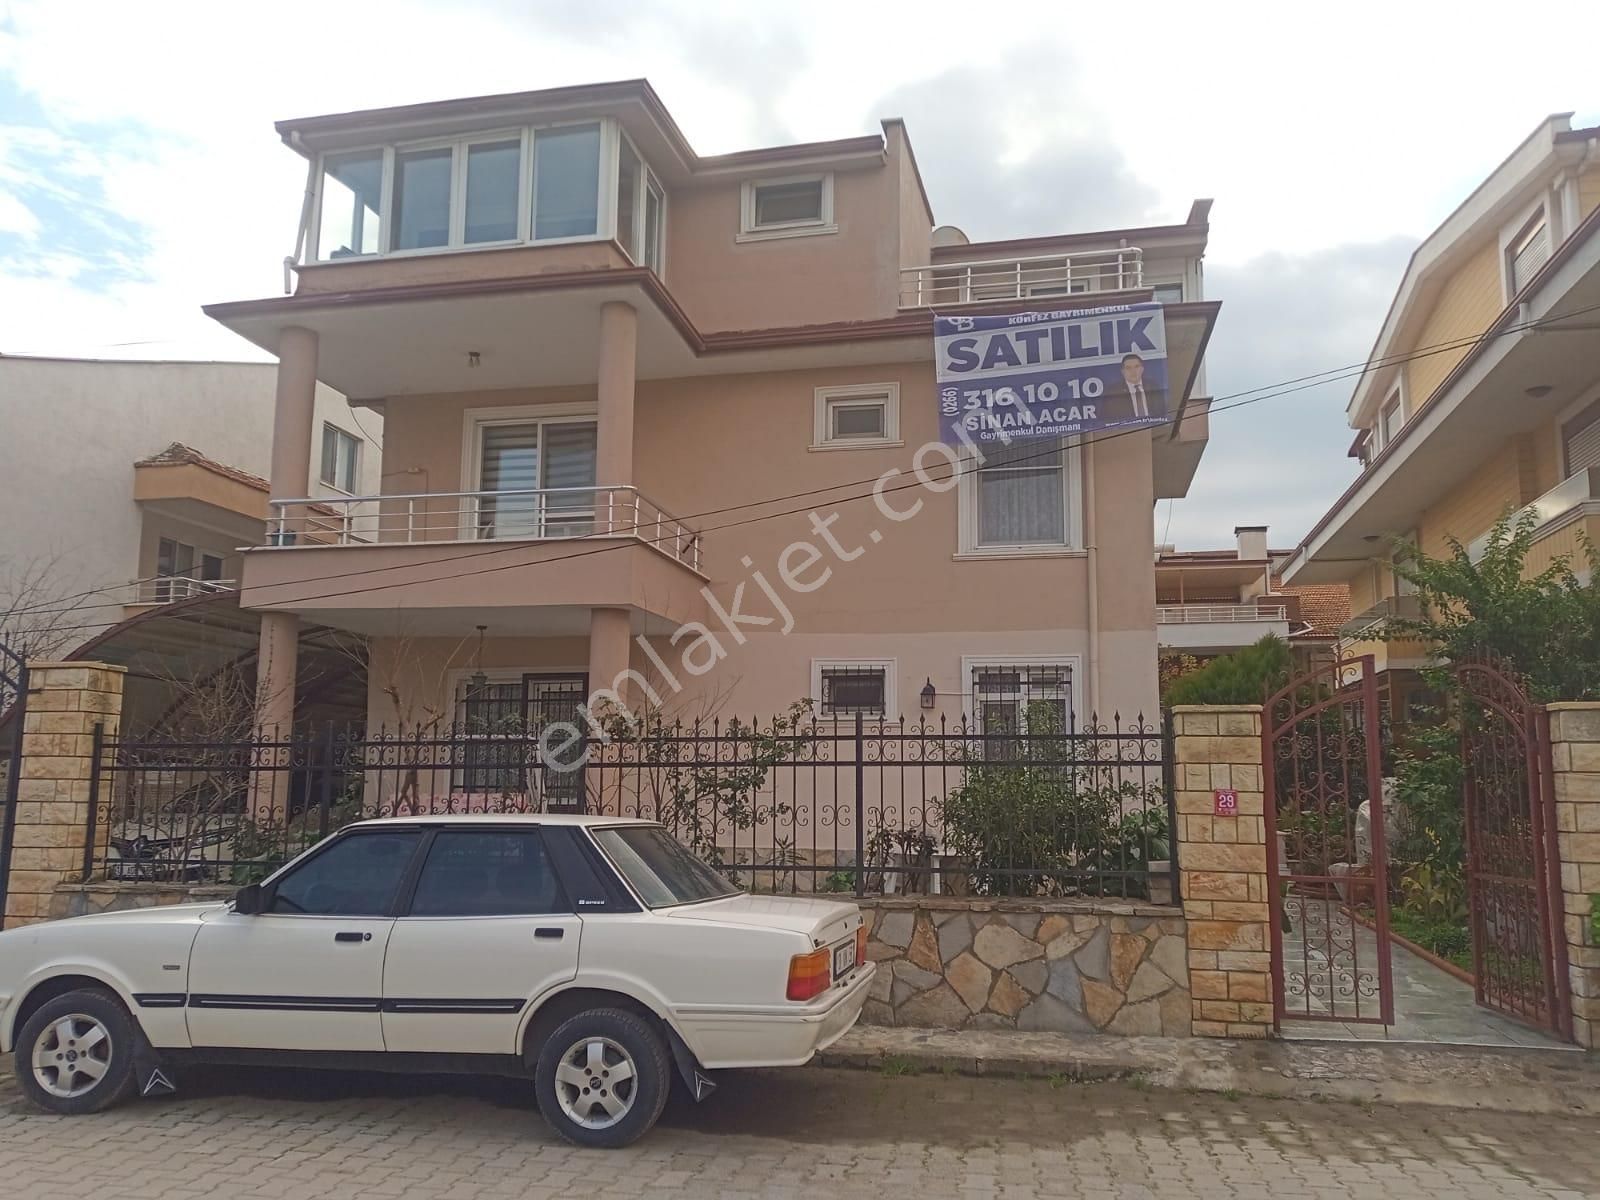 Edremit İkizçay Satılık Villa  EDREMİT İKİZÇAY MAH. DENİZE 50 METRE MESAFEDE SATILIK 8+3 VİLLA